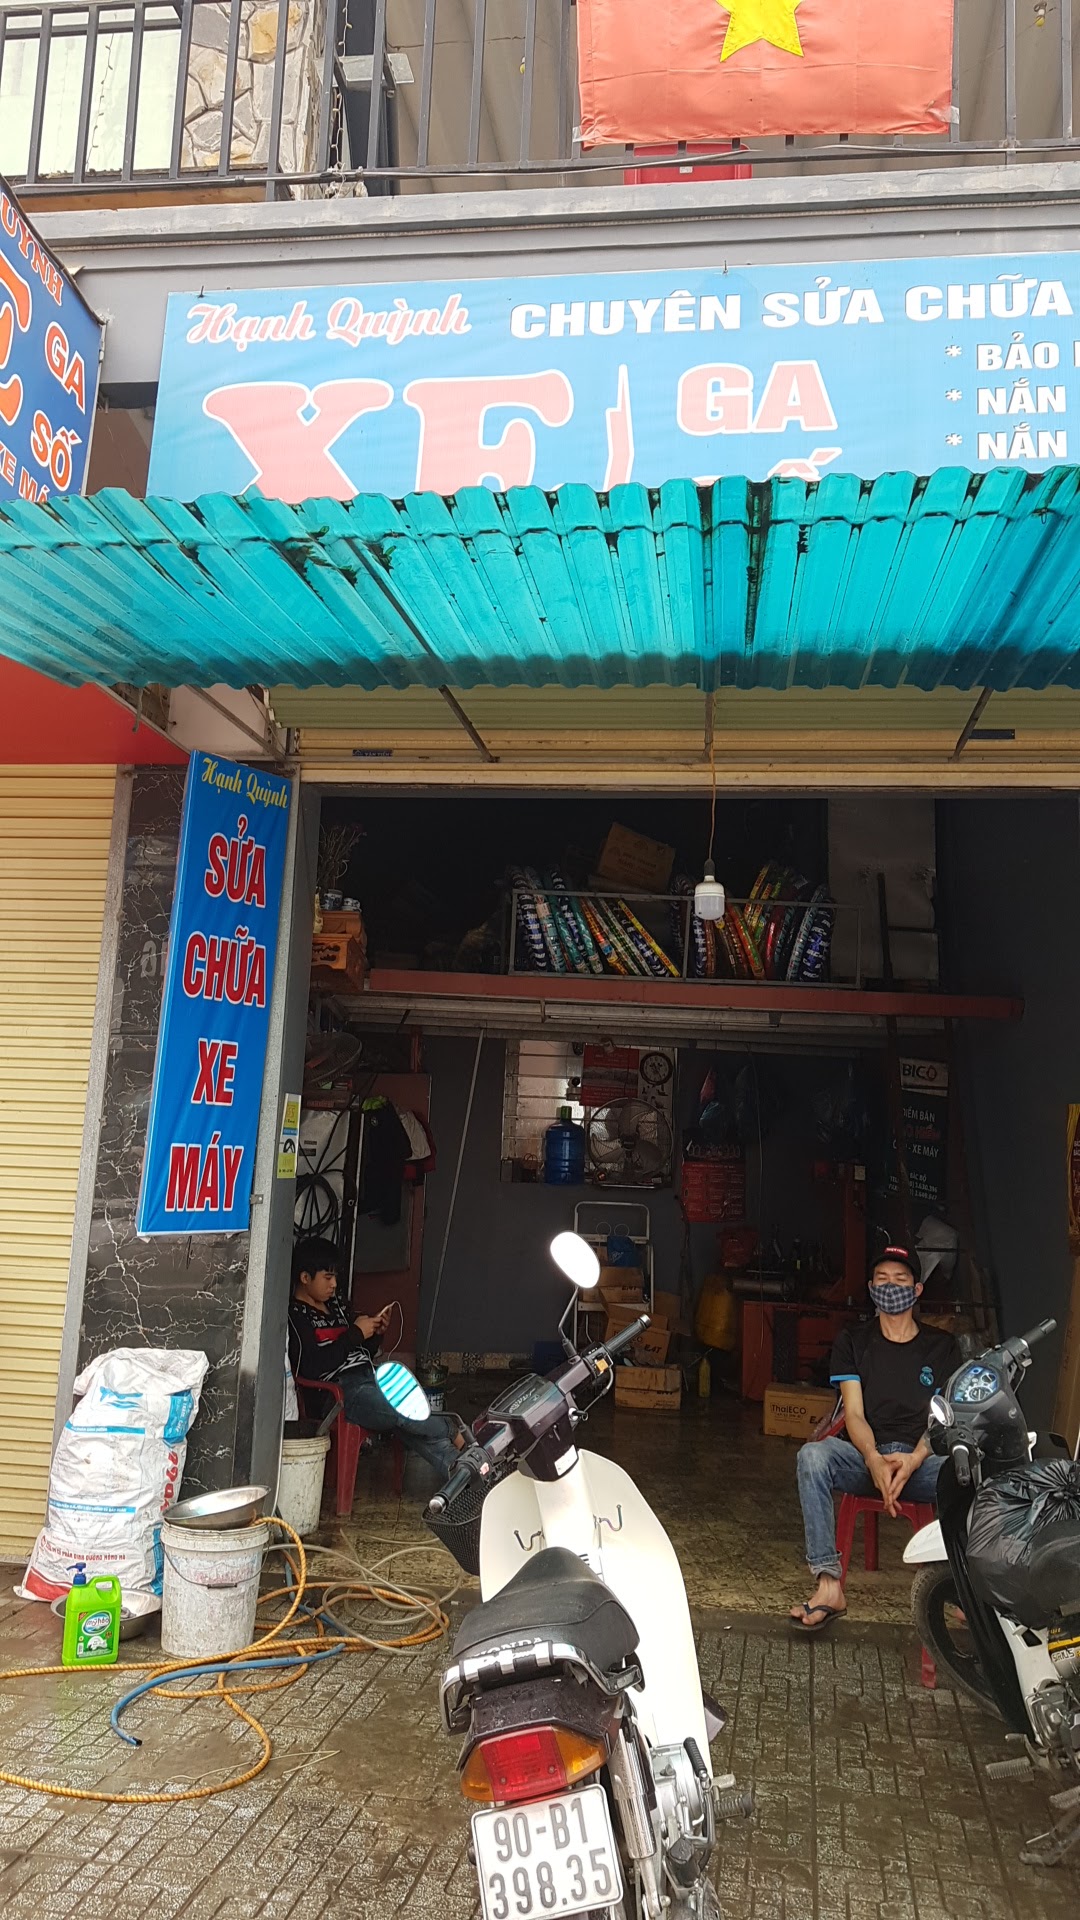 Tiệm Sửa Chữa Xe Máy Hạnh Quỳnh